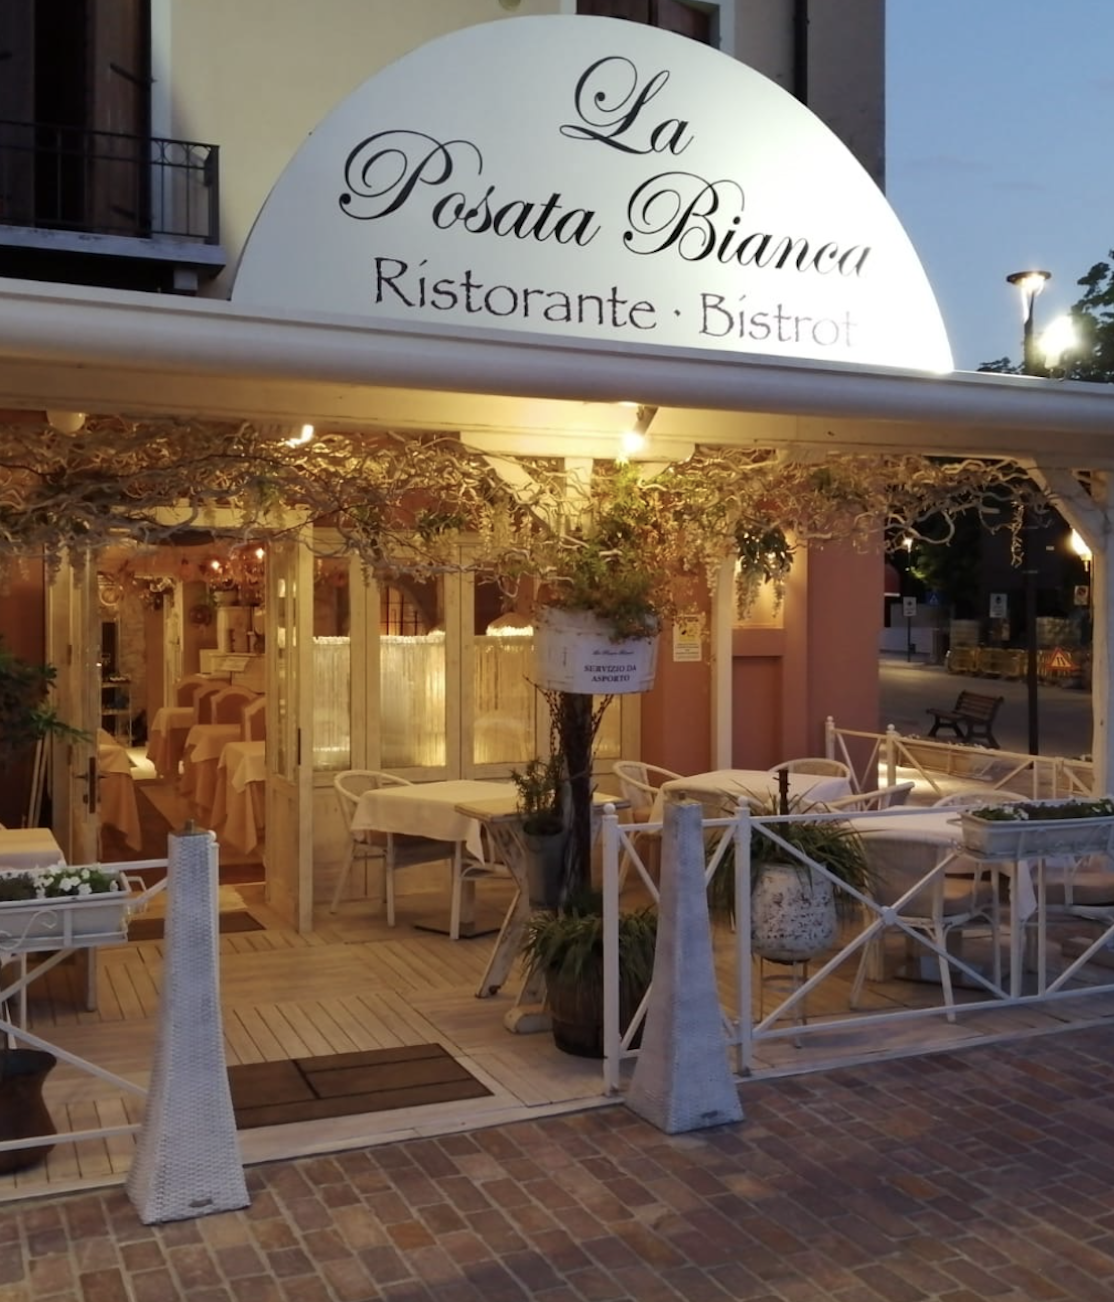 La Posata Bianca - Ristorante Pizzeria ad Abano Terme